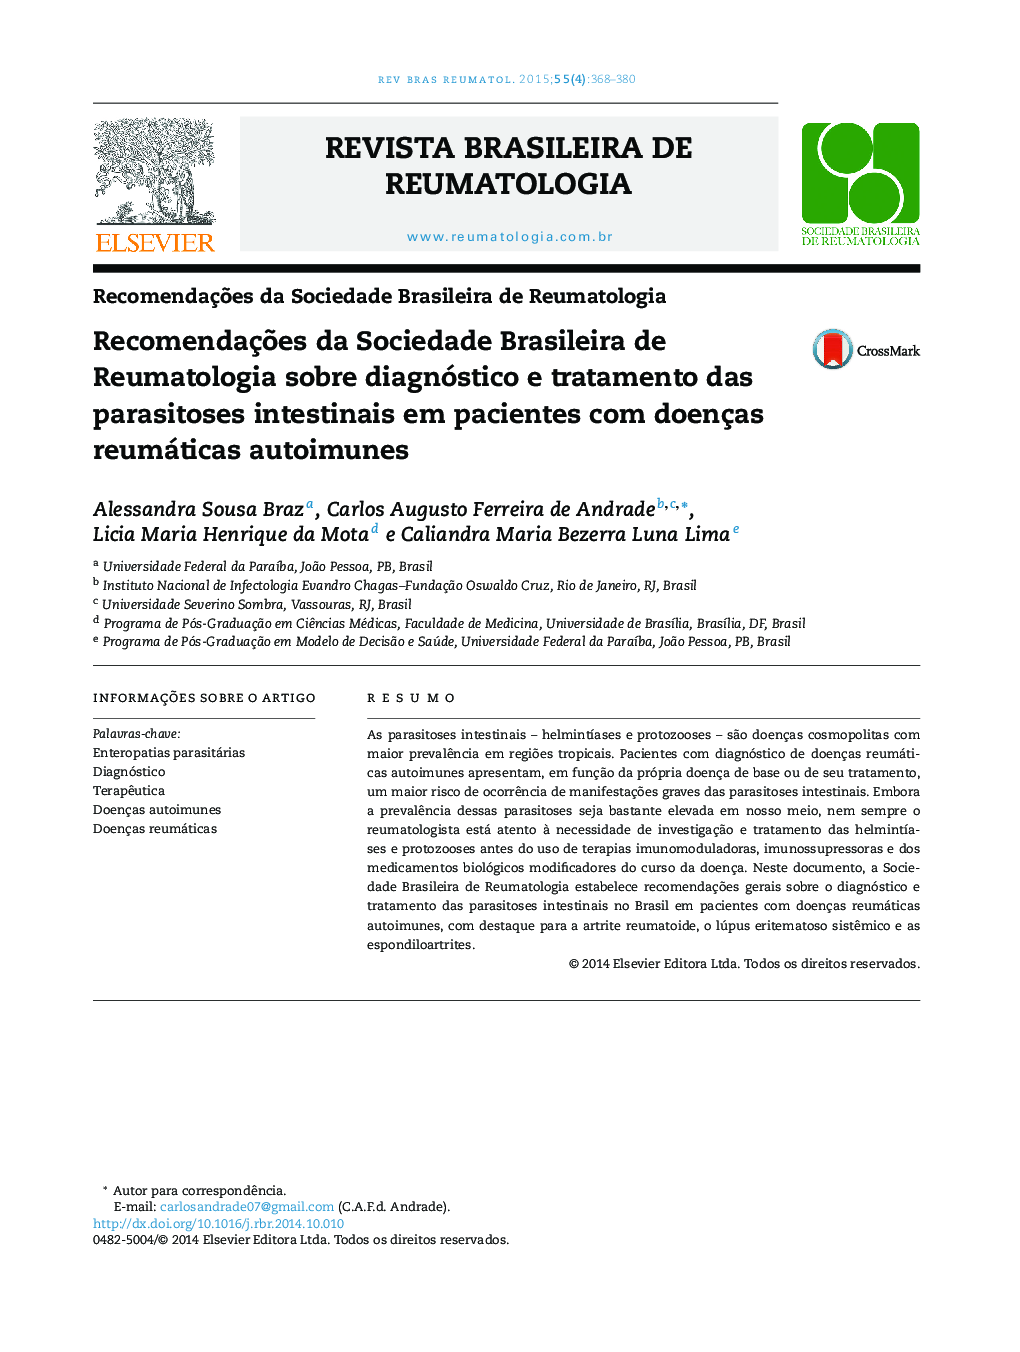 Recomendações da Sociedade Brasileira de Reumatologia sobre diagnóstico e tratamento das parasitoses intestinais em pacientes com doenças reumáticas autoimunes